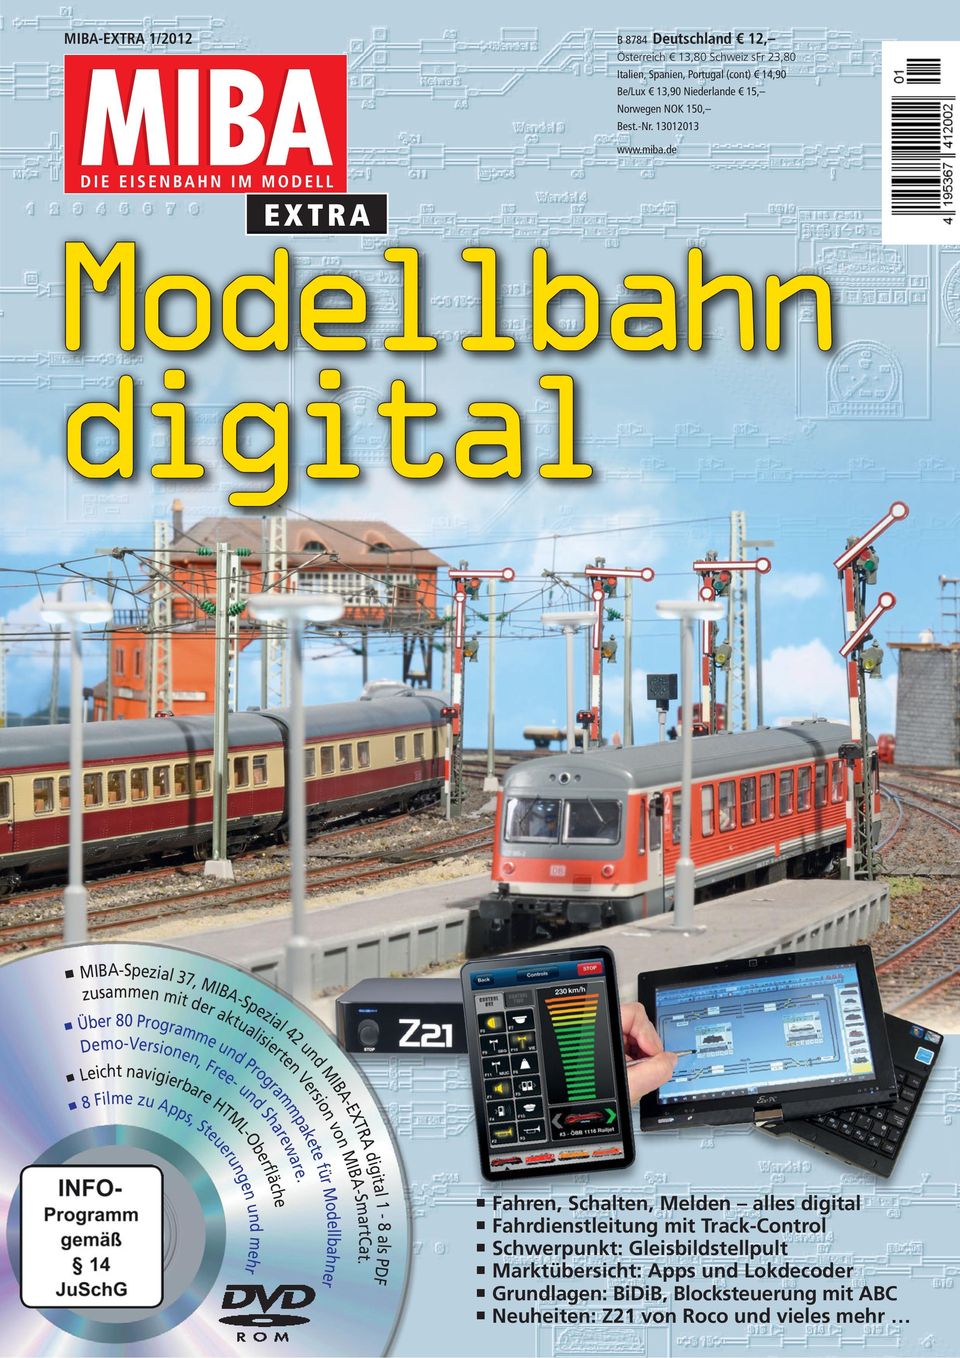 de EXTRA Modellbahn digital MIBA-Spezial 37, MIBA-Spezial 42 und MIBA-EXTRA digital 1-8 als PDF zusammen mit der aktualisierten Version von MIBA-SmartCat.